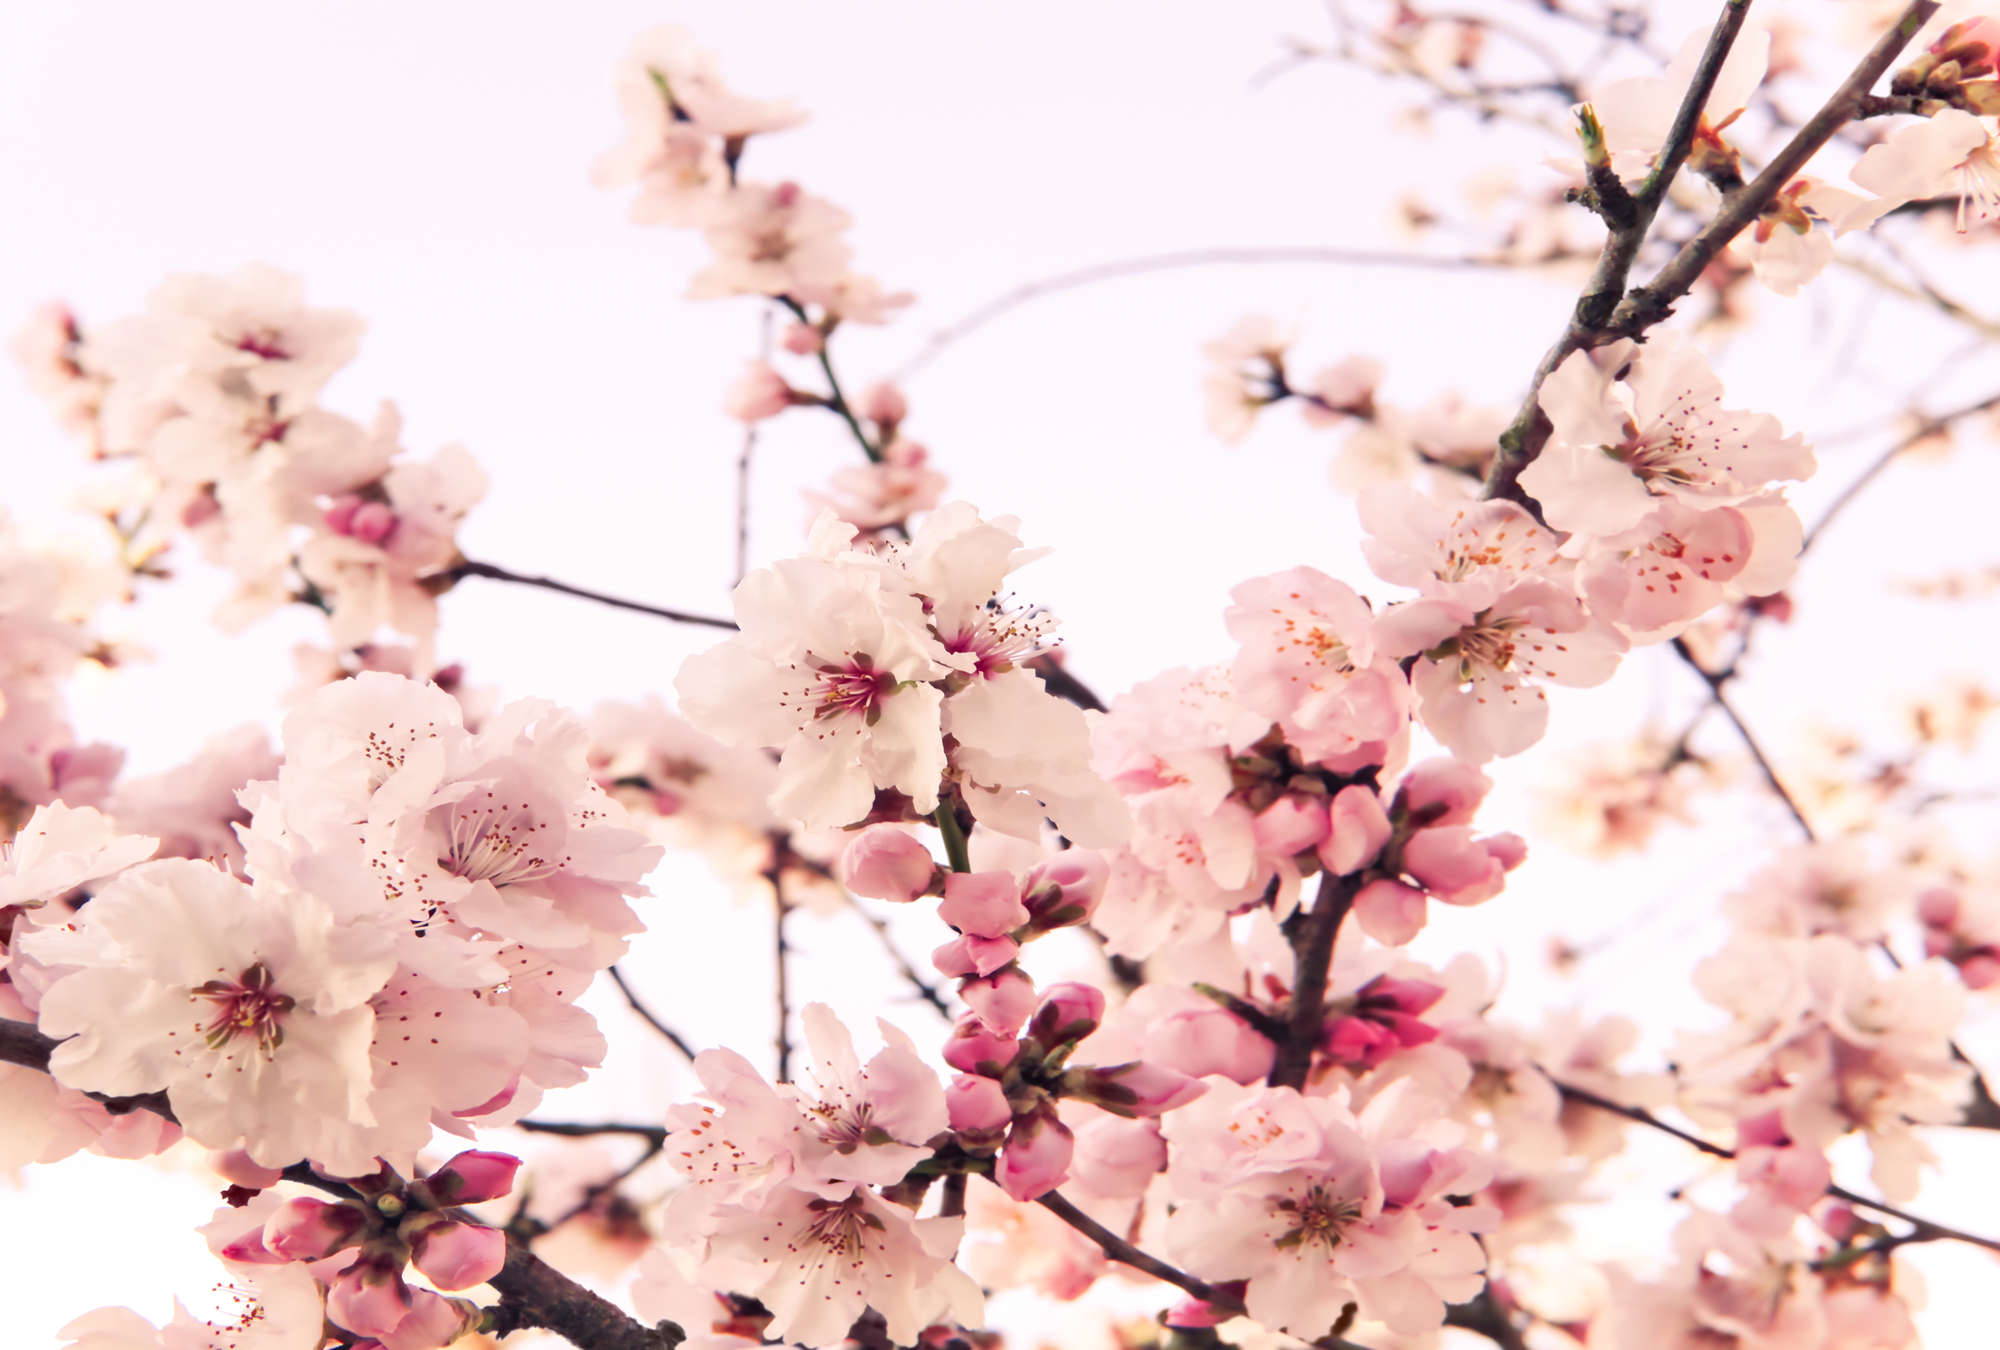             Pflanzen Fototapete blühende Kirschblüte auf Matt Glattvlies
        